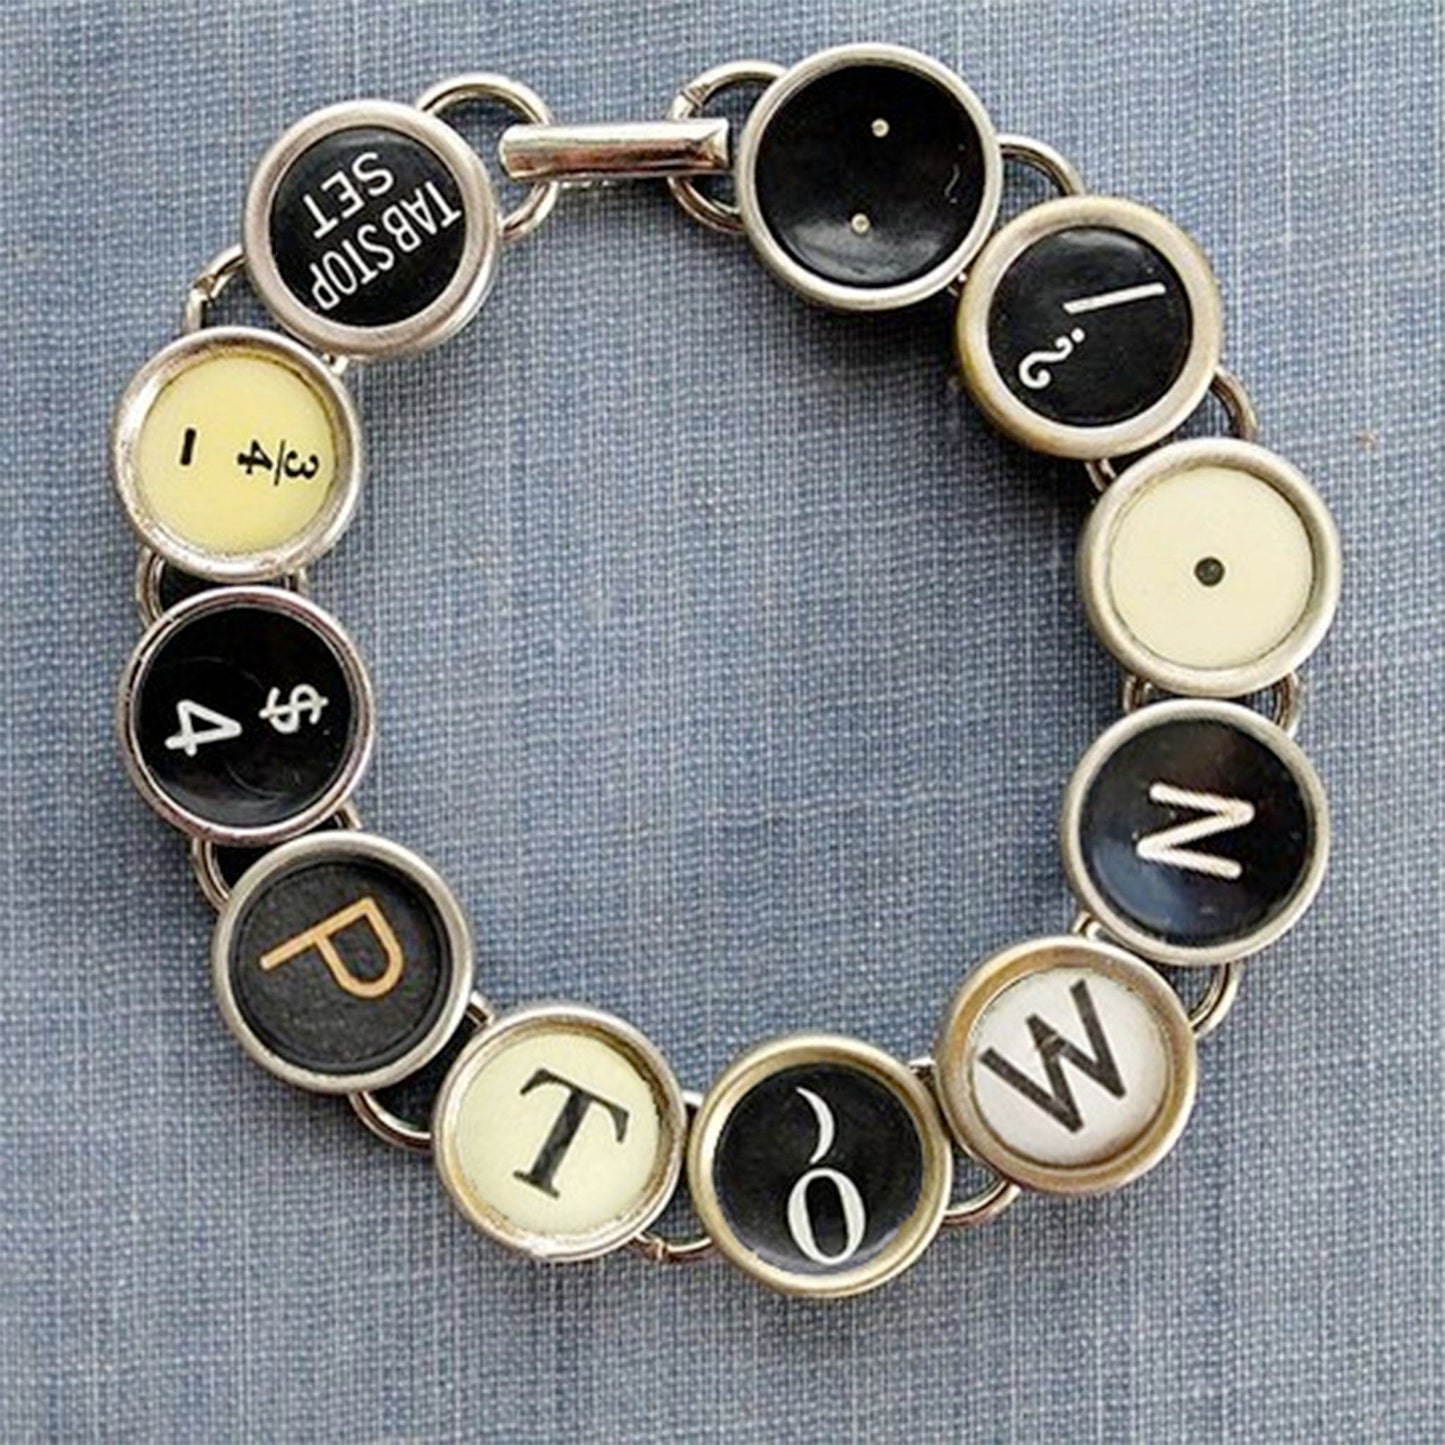 Typewriter Key Bracelet - PTOWN